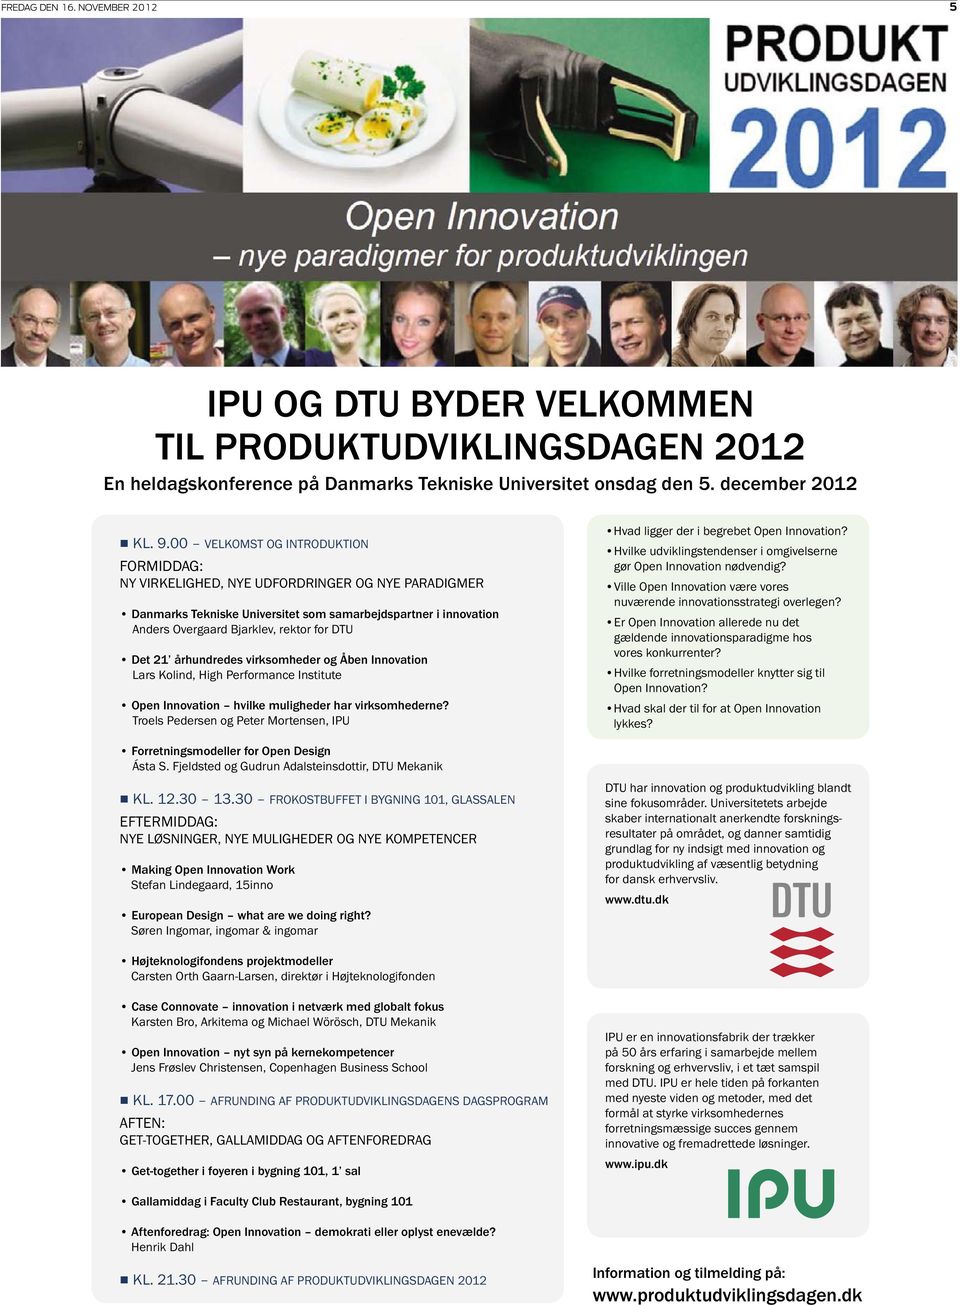 Det 21 århundredes virksomheder og Åben Innovation Lars Kolind, High Performance Institute Open Innovation hvilke muligheder har virksomhederne?